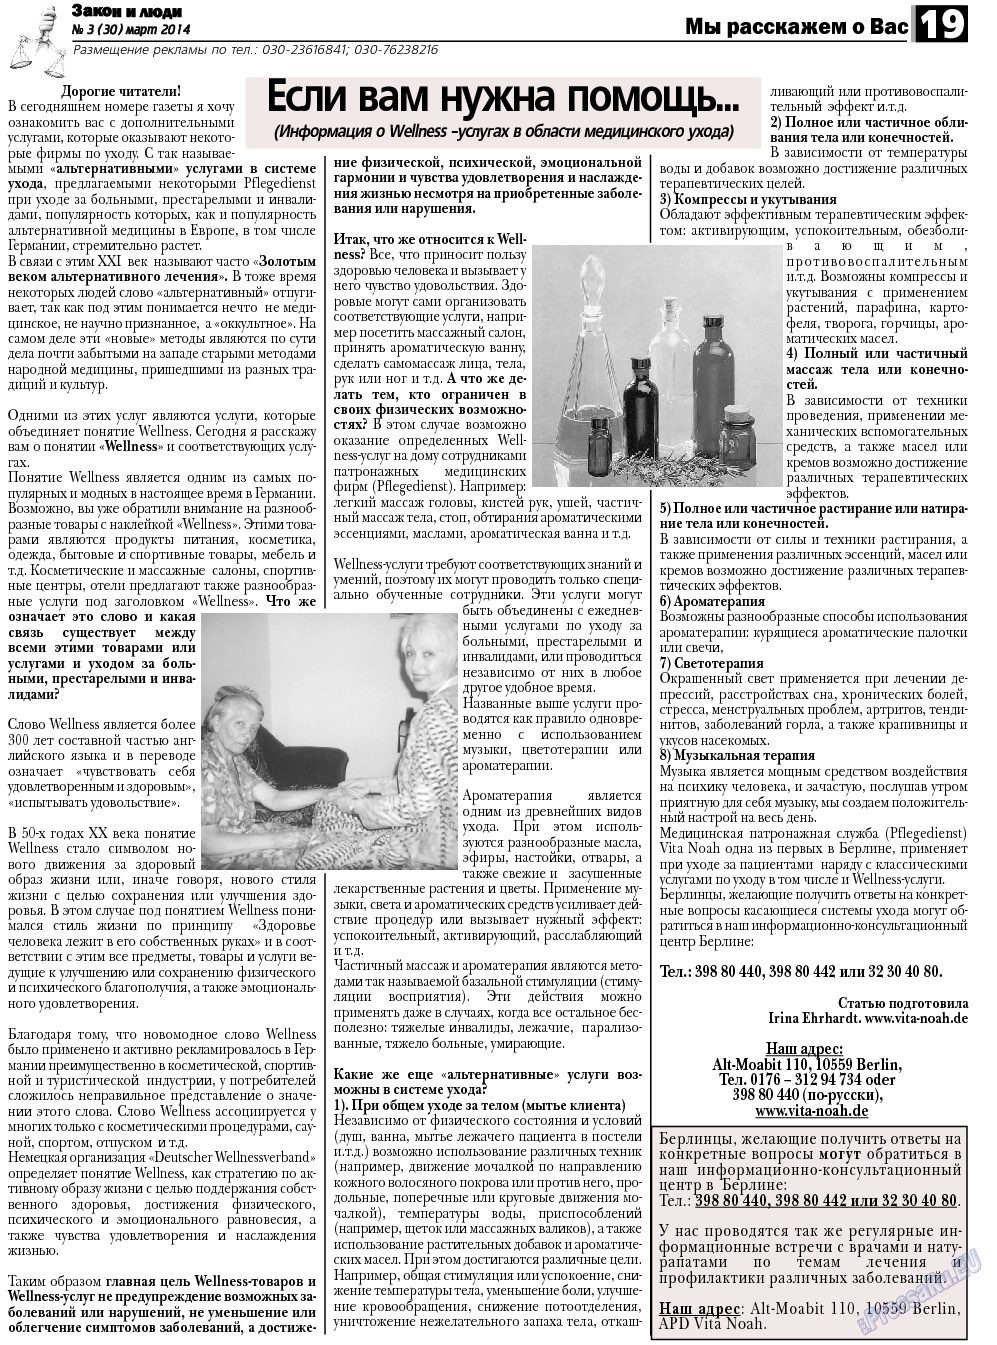 Закон и люди (газета). 2014 год, номер 3, стр. 19